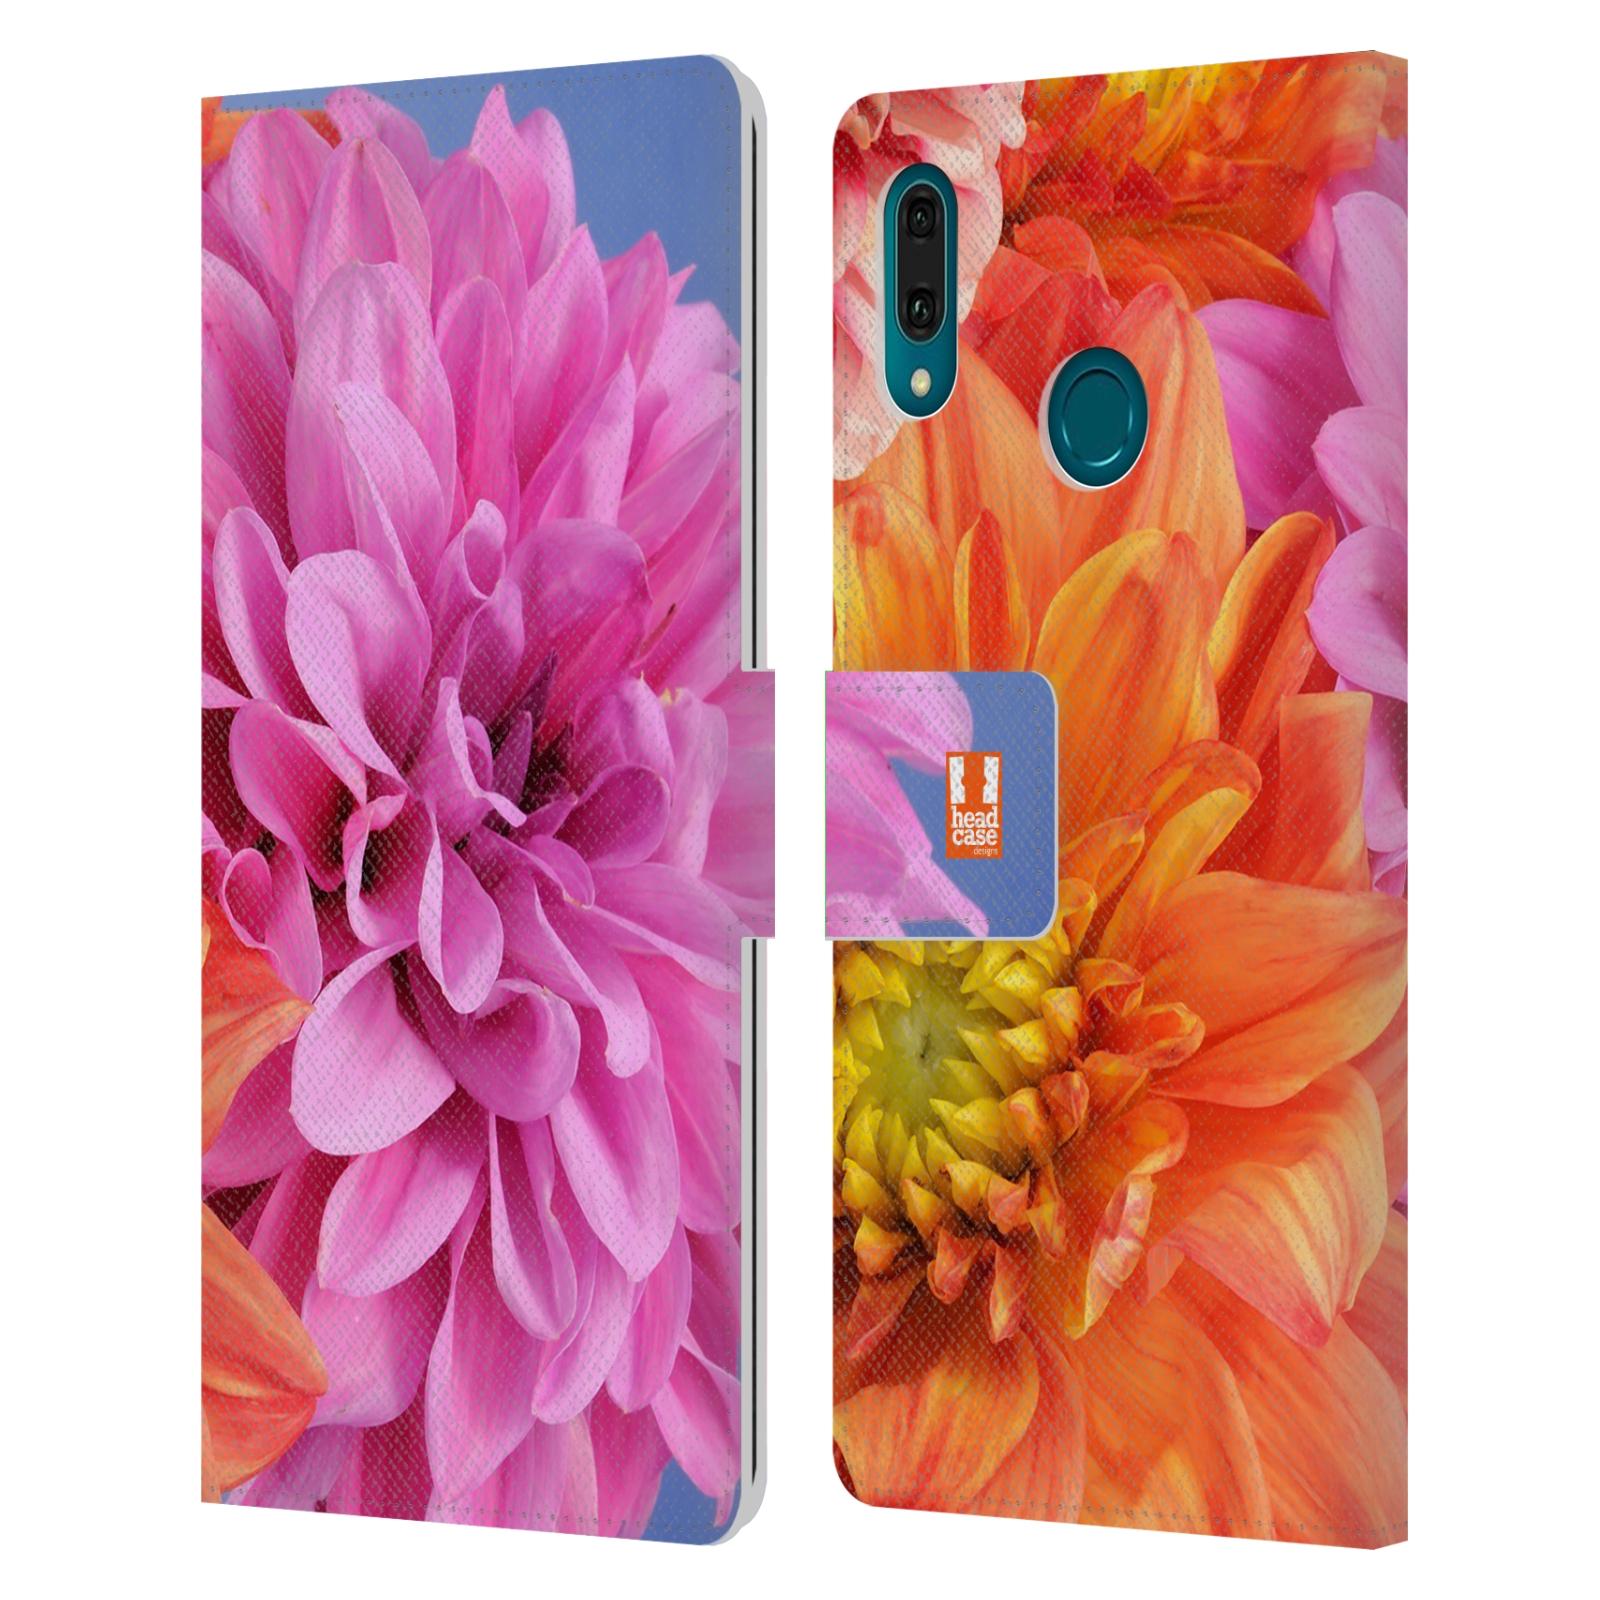 Pouzdro na mobil Huawei Y9 2019 květy foto Jiřinka růžová a oranžová